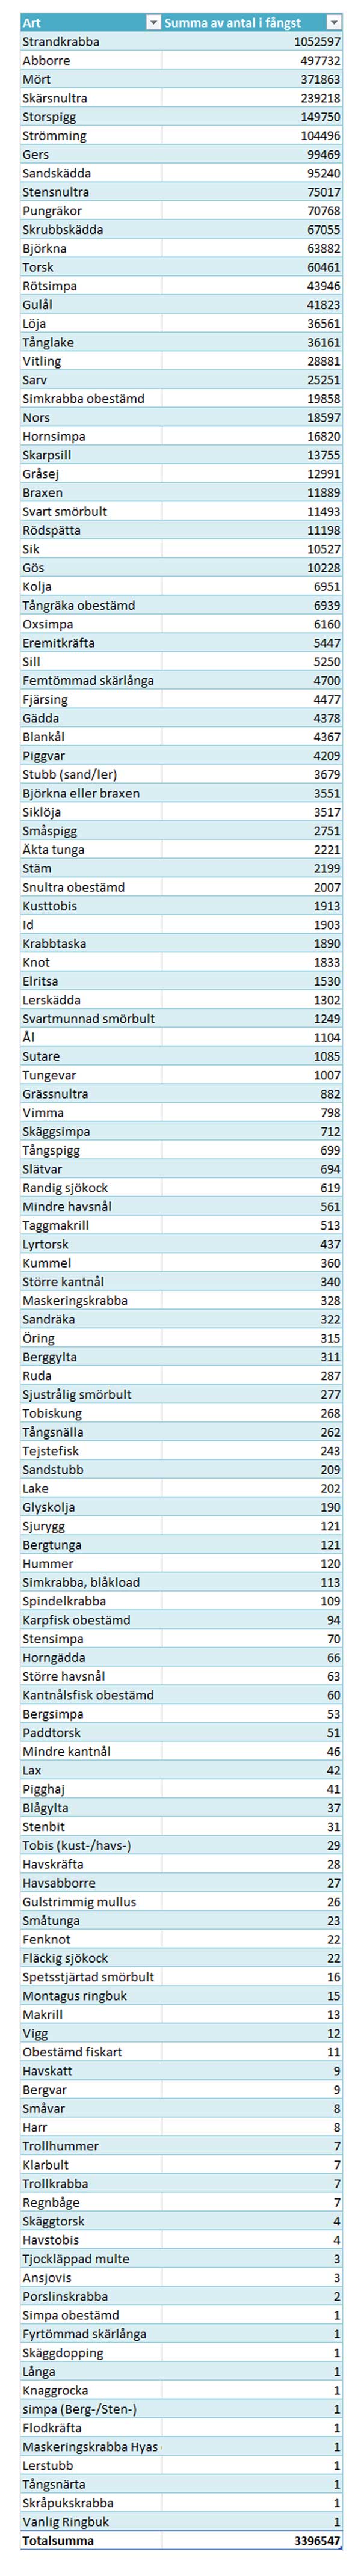 Tabell över antalet fiskar/skaldjur av olika arter som finns i Kustfiskdatabasen, KUL, i december 2016. Källa: Ylva Ericson, SLU.